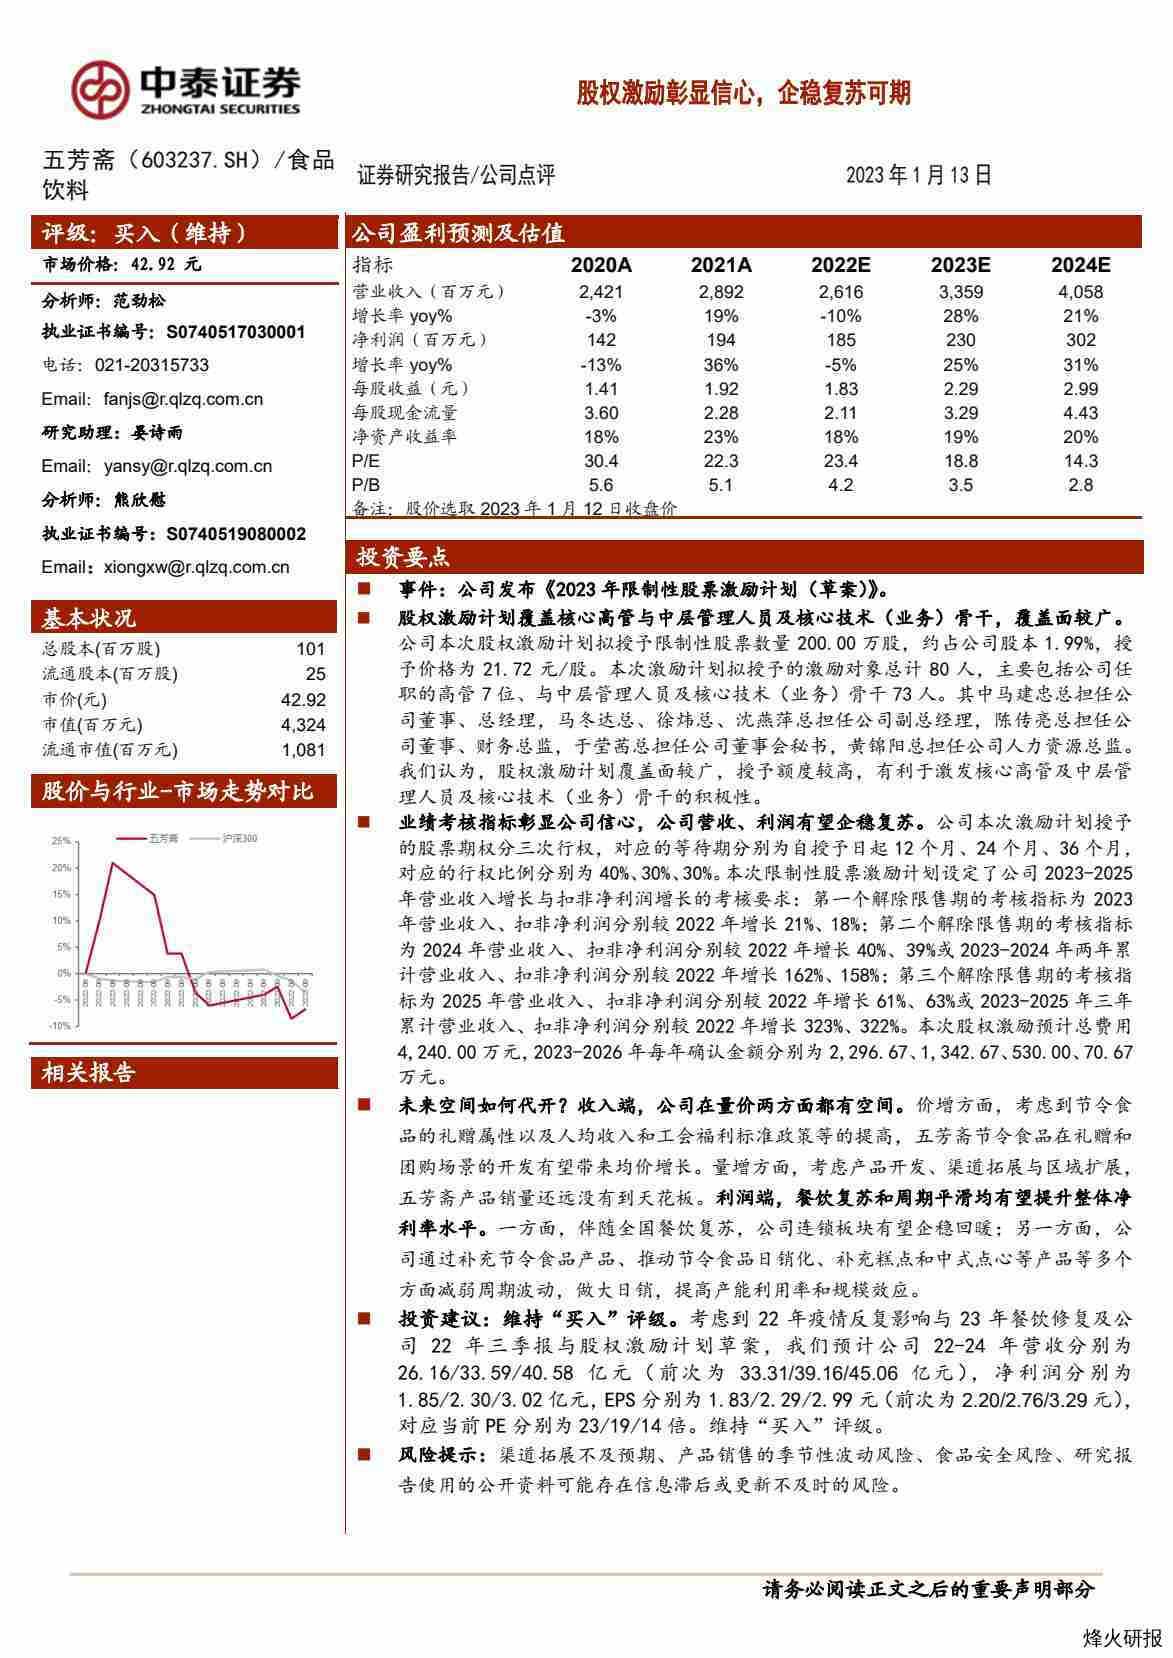 【中泰证券】股权激励彰显信心，企稳复苏可期.pdf-第一页